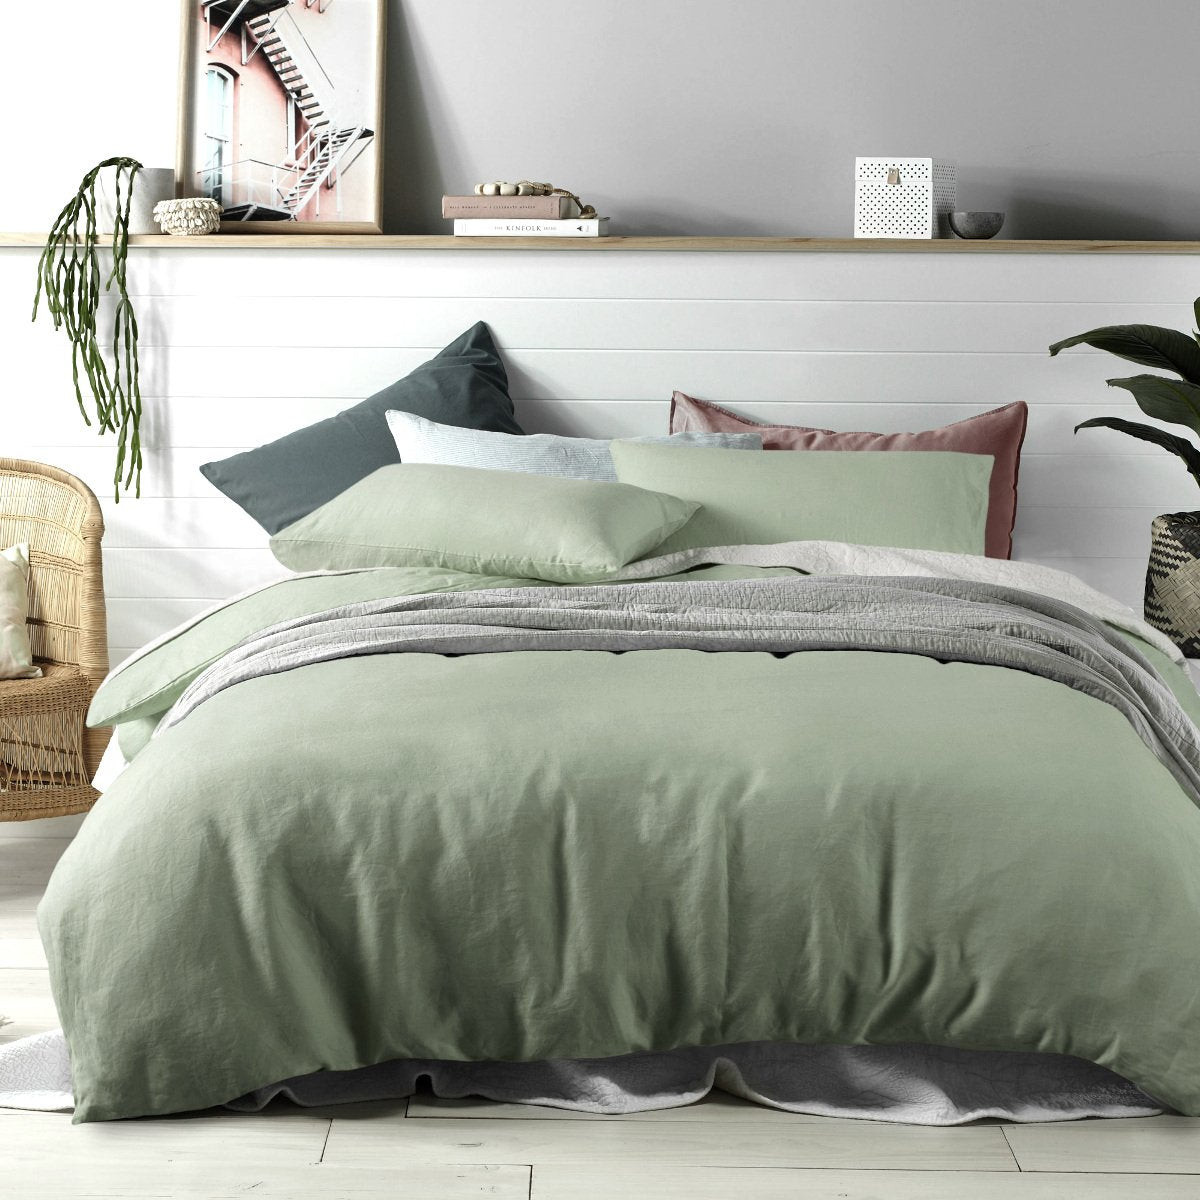 100% Linen sage green duvet cover set. Vinatge wash linen quilt cover set